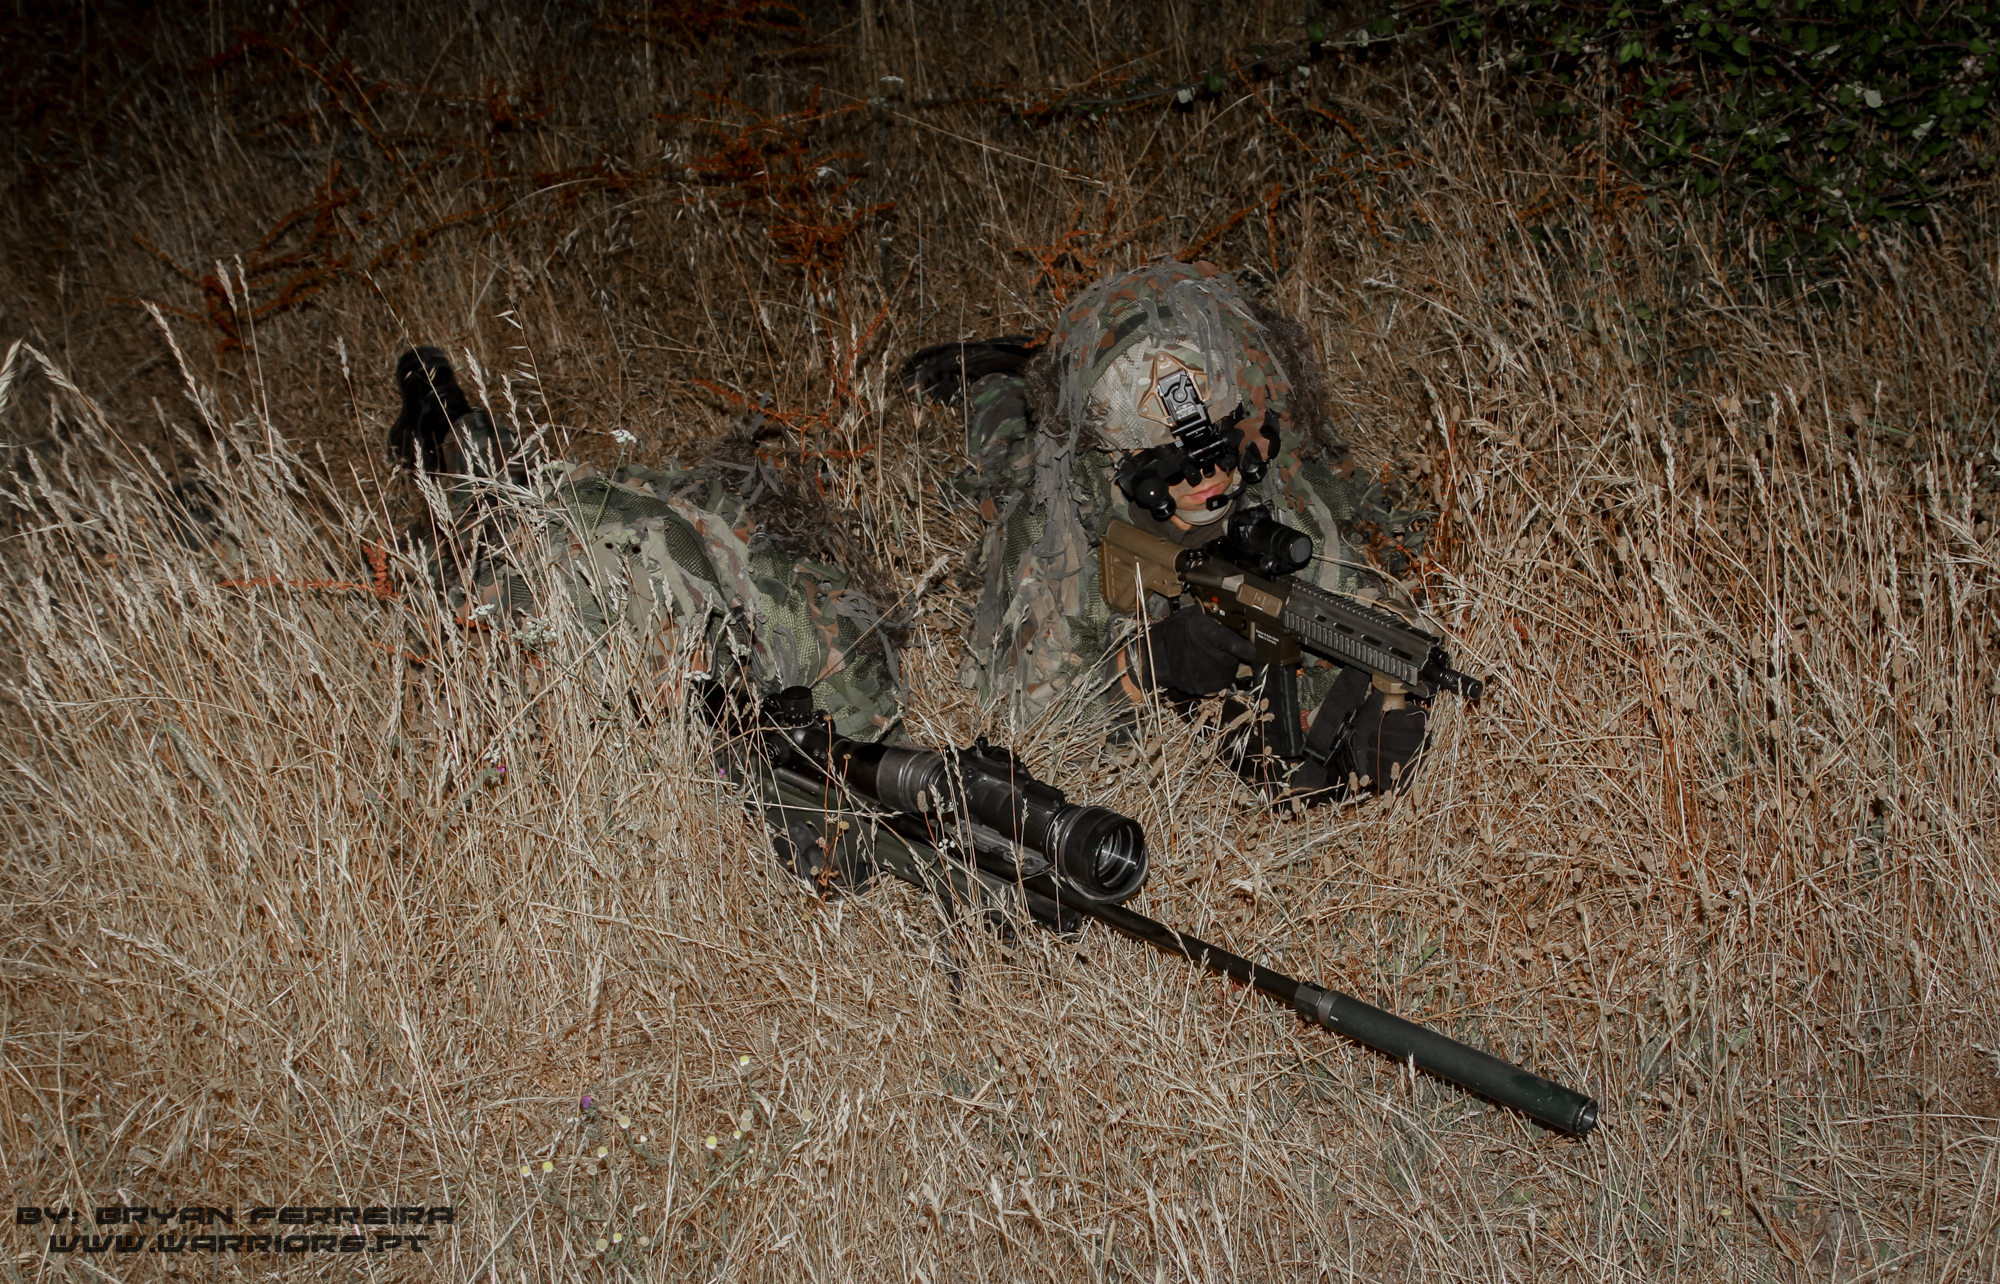 Uma equipa de Snipers Elemento da Força de Operações Especiais (Army SOF) Portuguesa mantém-se atento a qualquer ameaça. Estam armados com espingardas de assalto HK416, carabina de precisão Accuracy International e equipados com modernos equipamentos de combate nocturno.